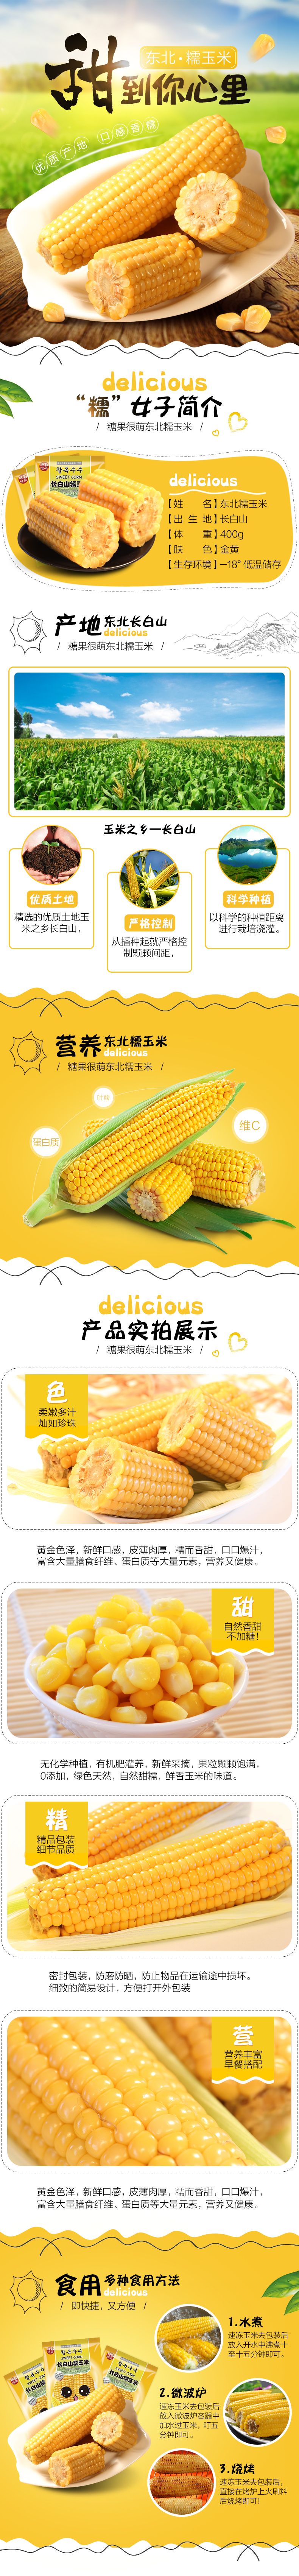 玉米土特产水果食品详情页